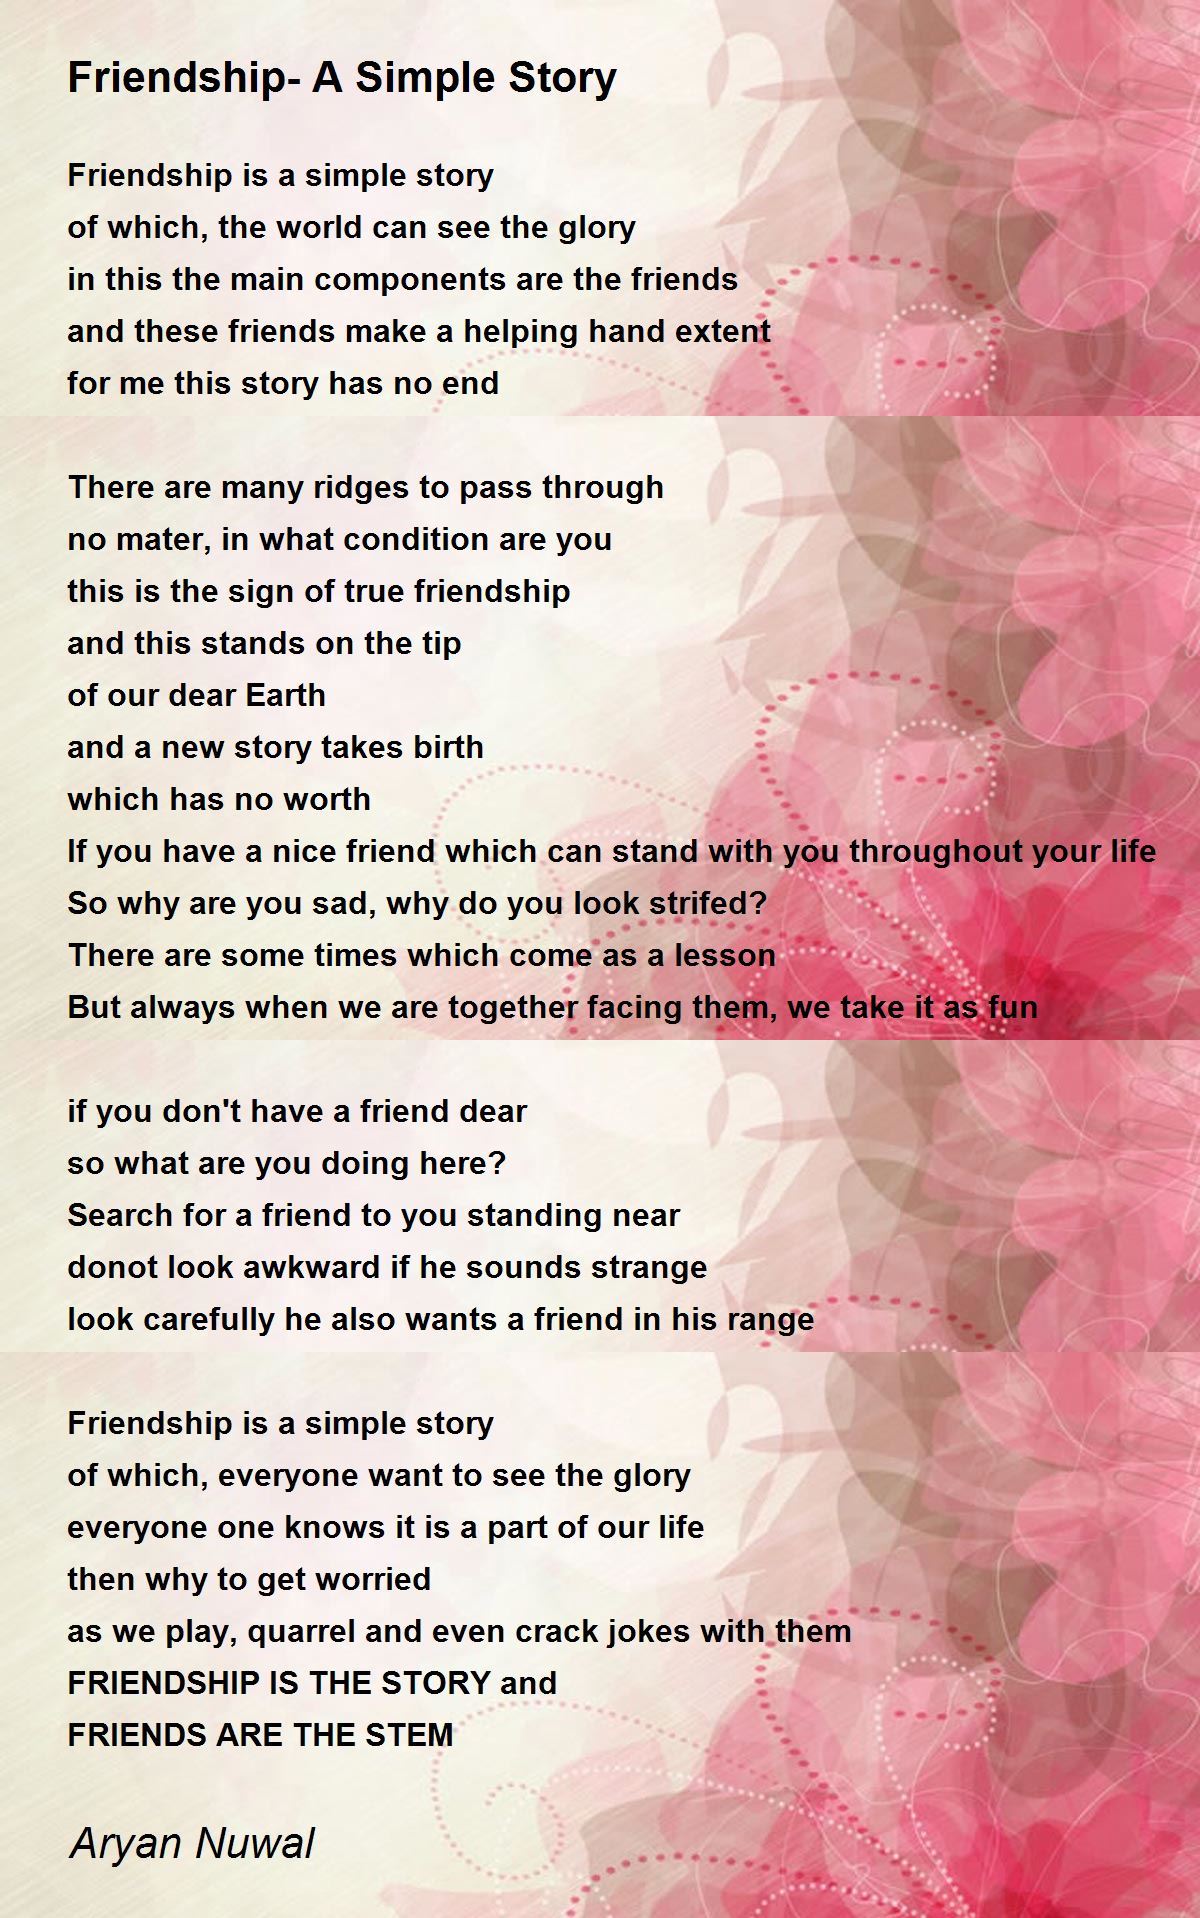 Friendship- A Simple Story Poem by Aryan Nuwal - Poem Hunter